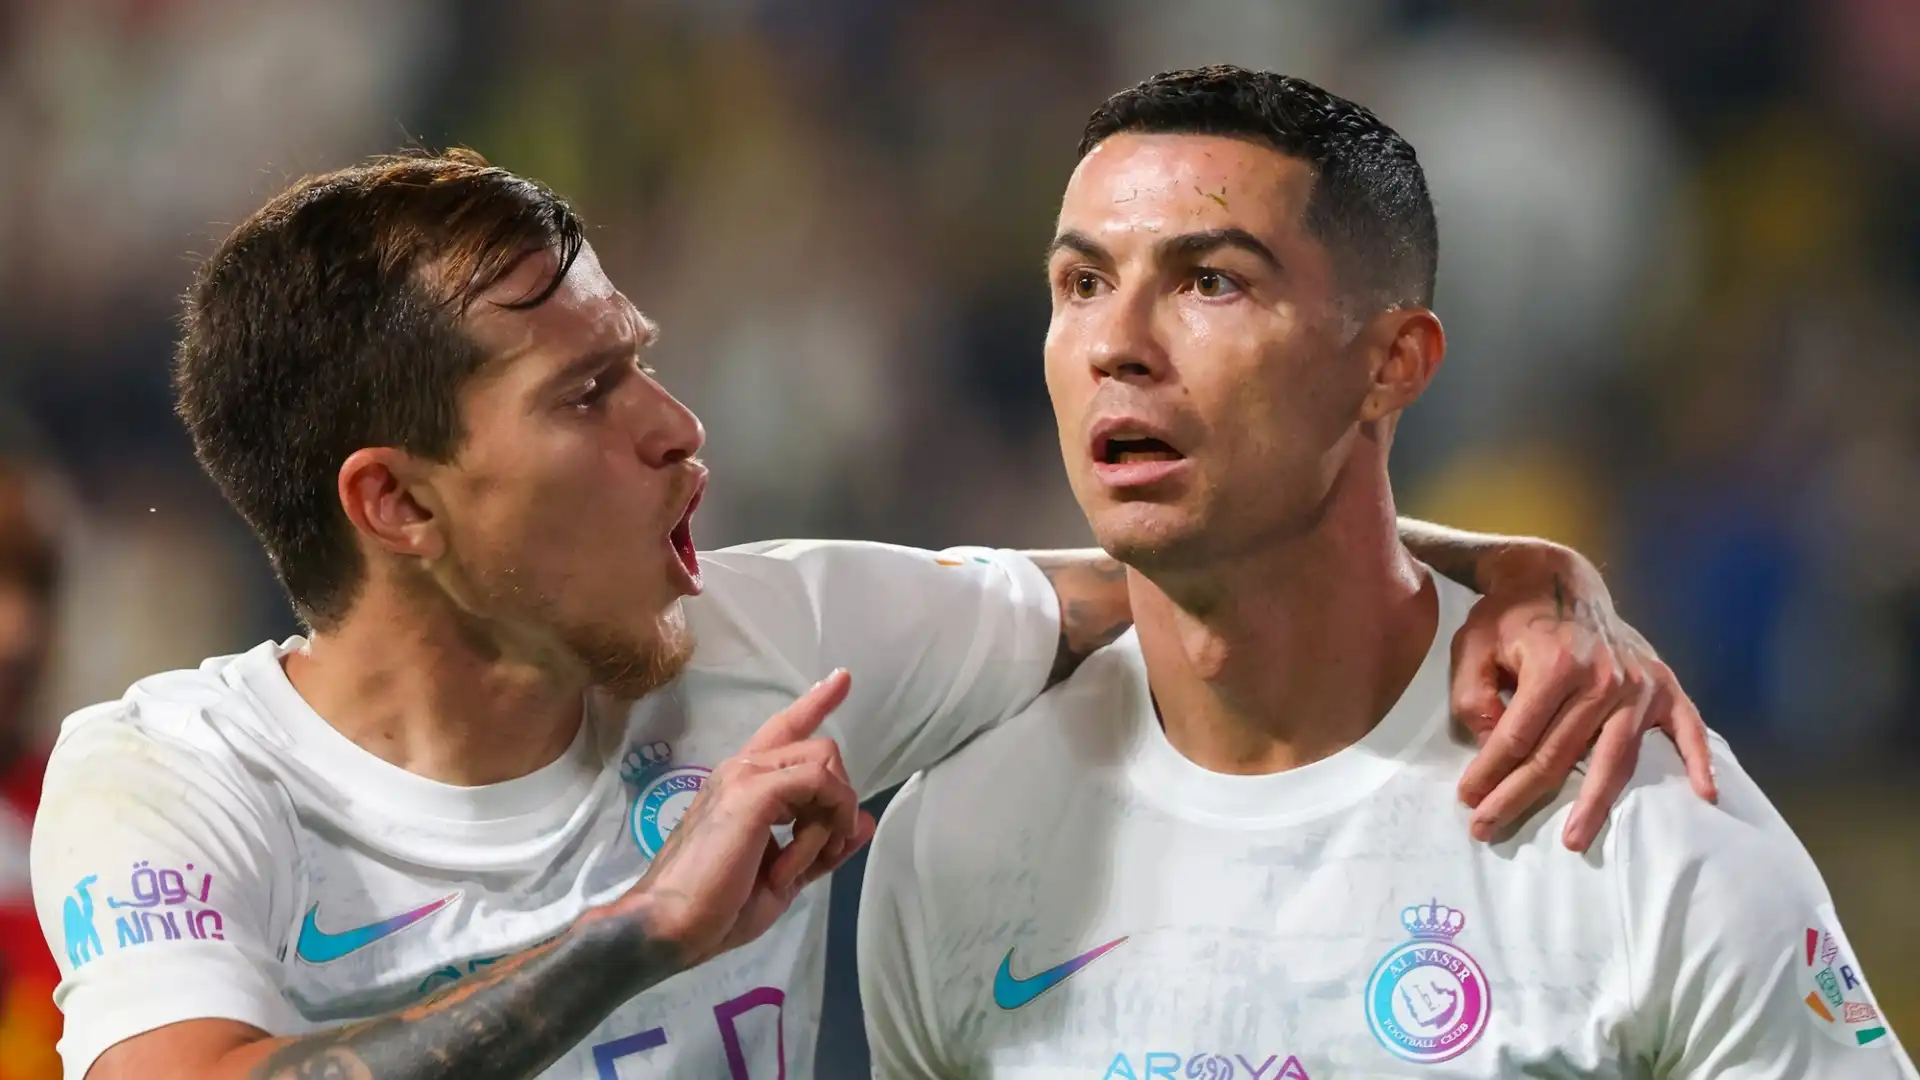 Anche il Var ha convalidato il gol, facendo infuriare ancora di più un incredulo Ronaldo